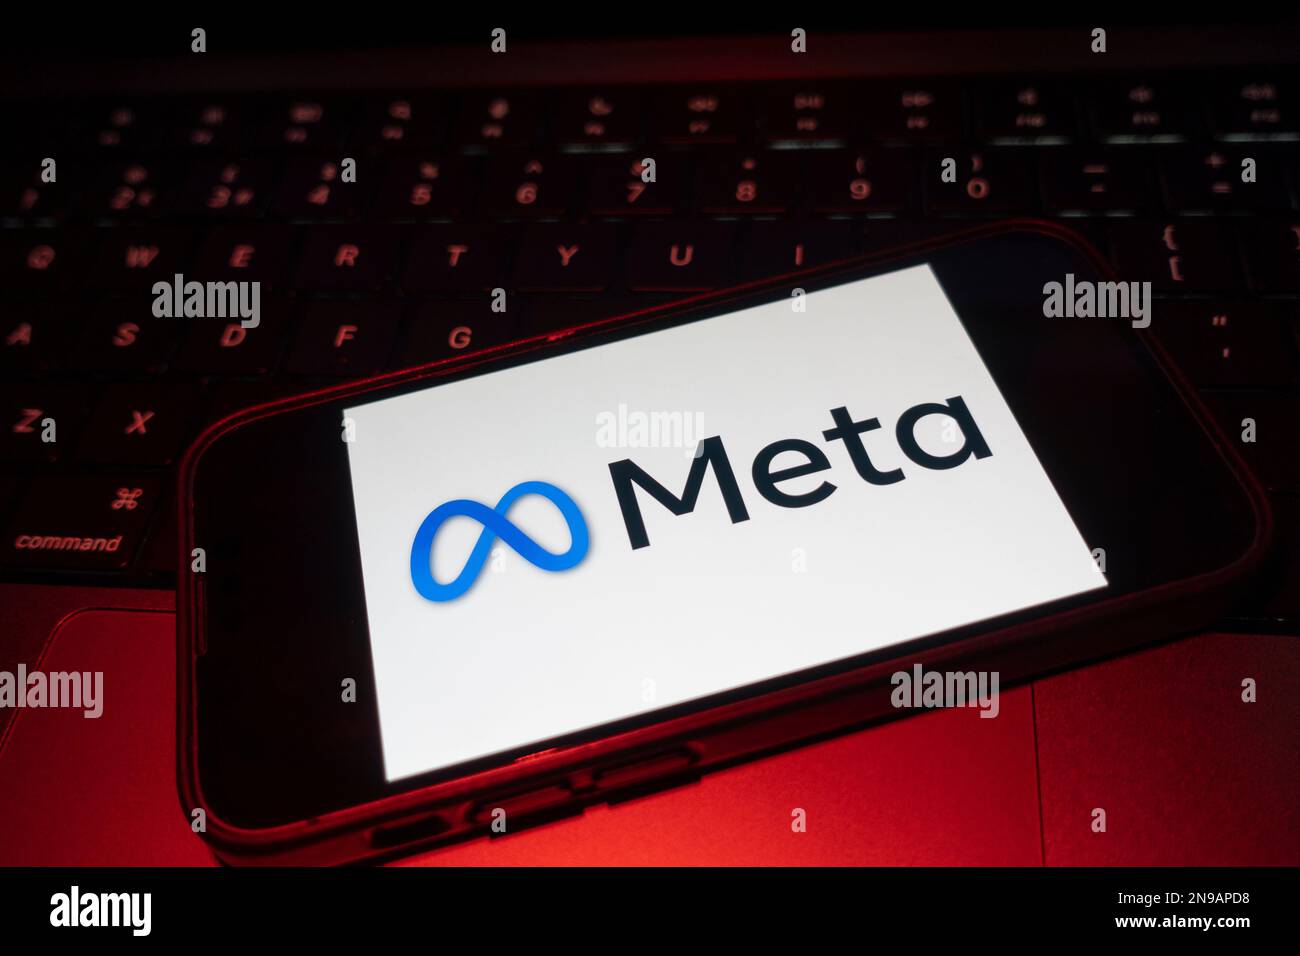 Immagine composita digitale del logo Facebook Meta su carta elettronica. Foto Stock